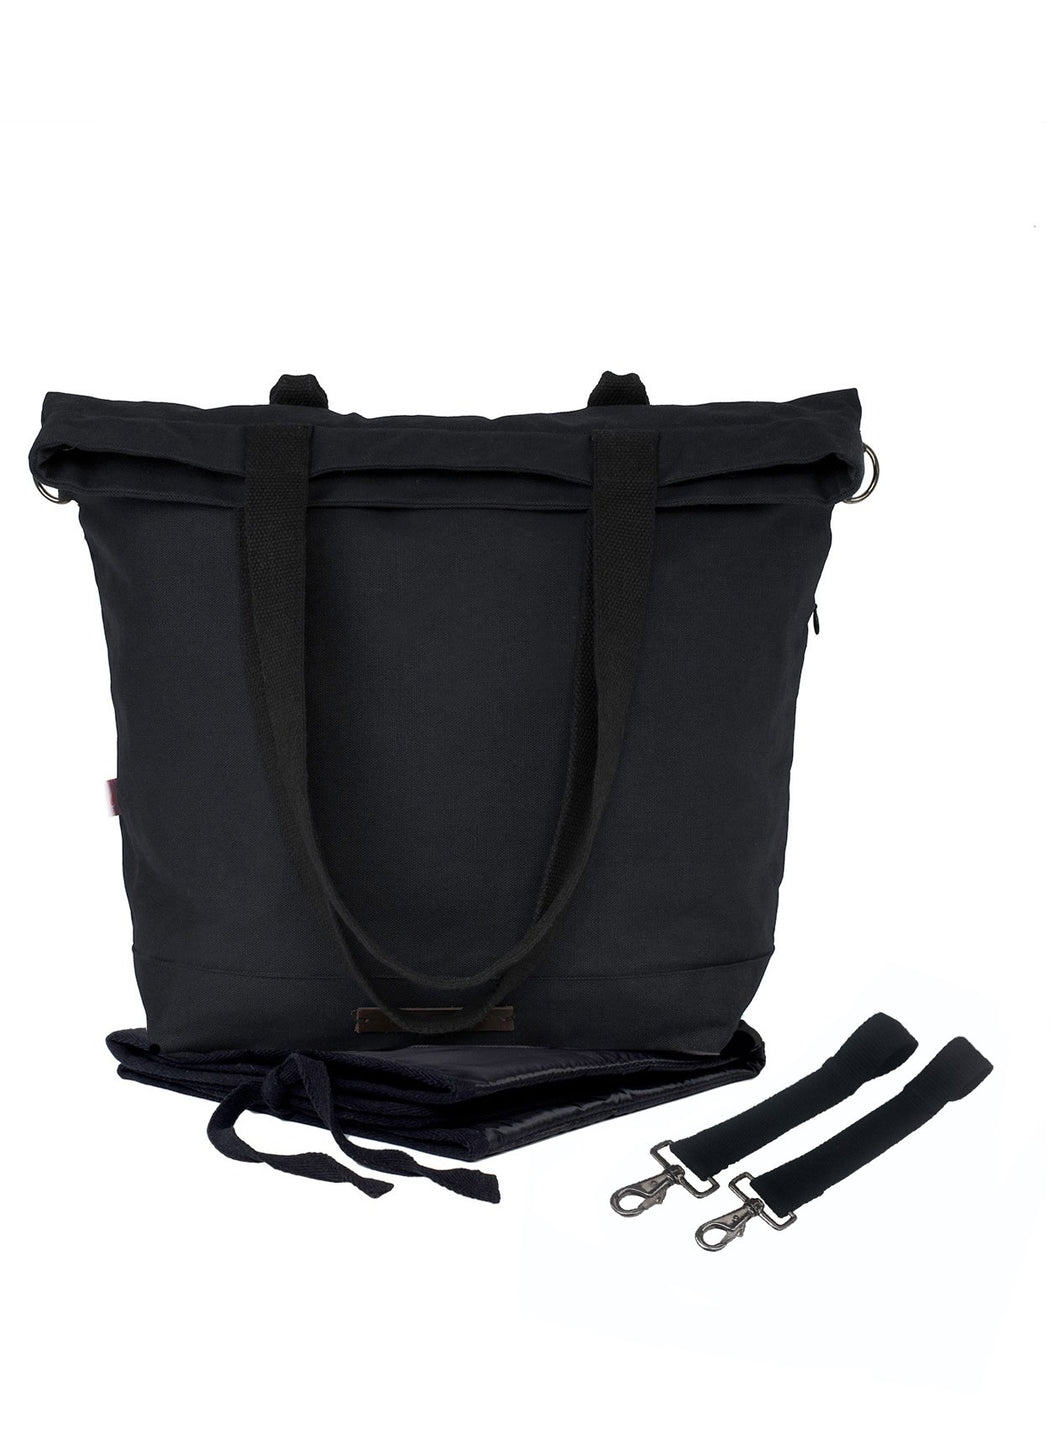 Die schwarze Wickeltasche global traveler von mara mea wird mit Wickelunterlage und Kinderwagenbefestigung geliefert.